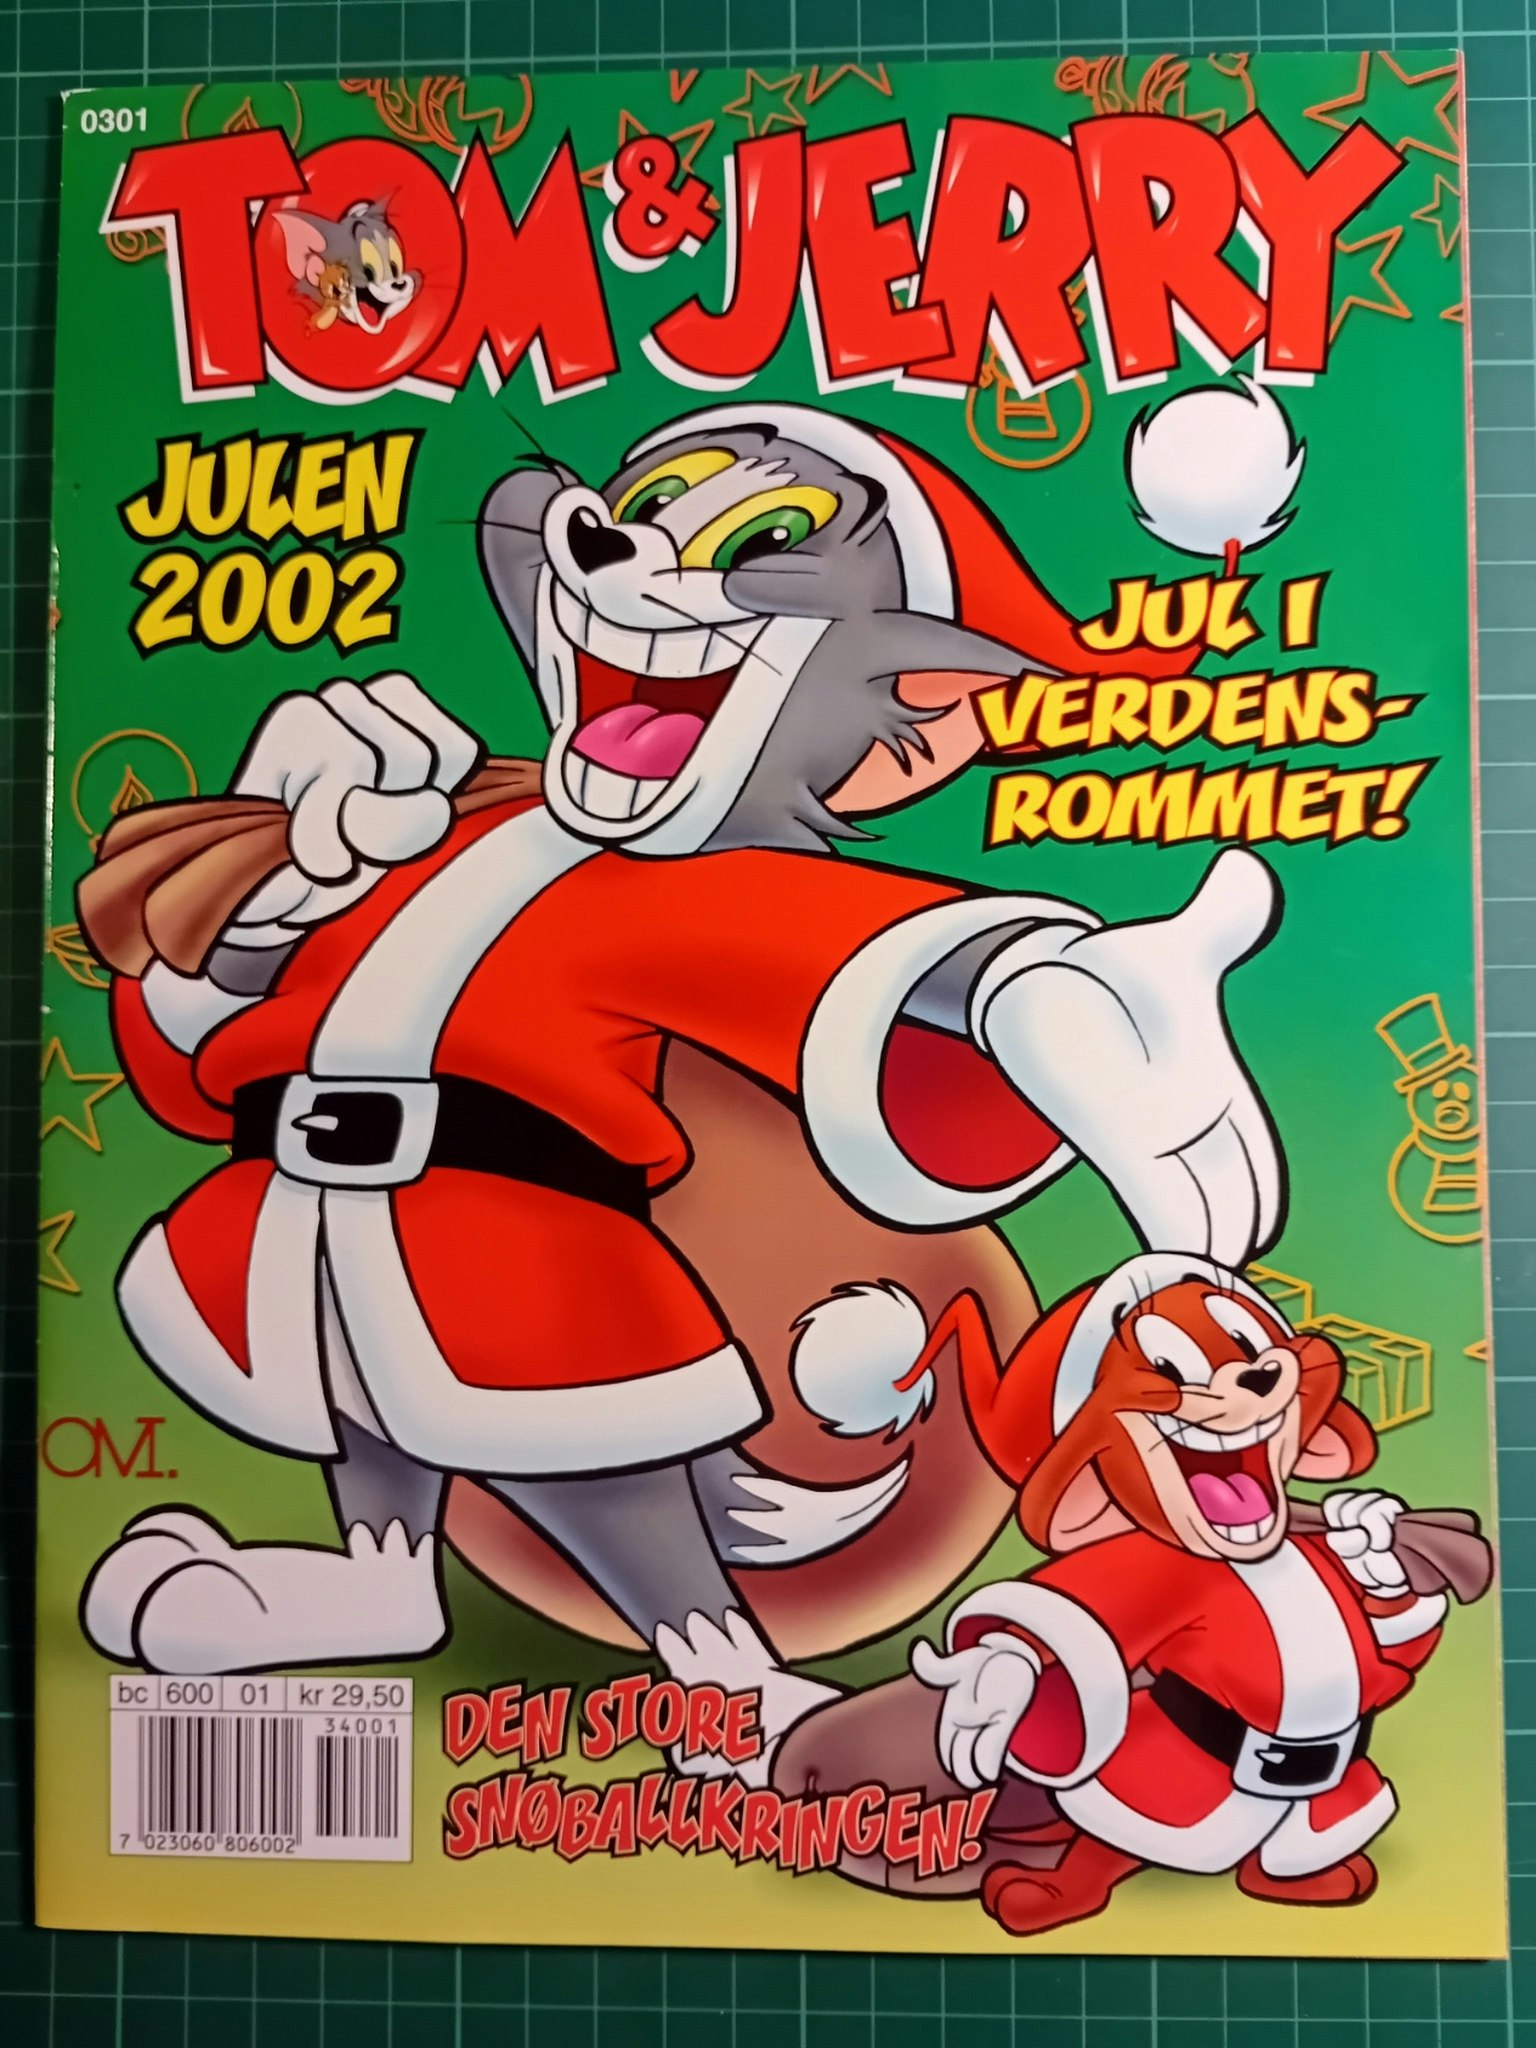 Tom & Jerry julen 2002